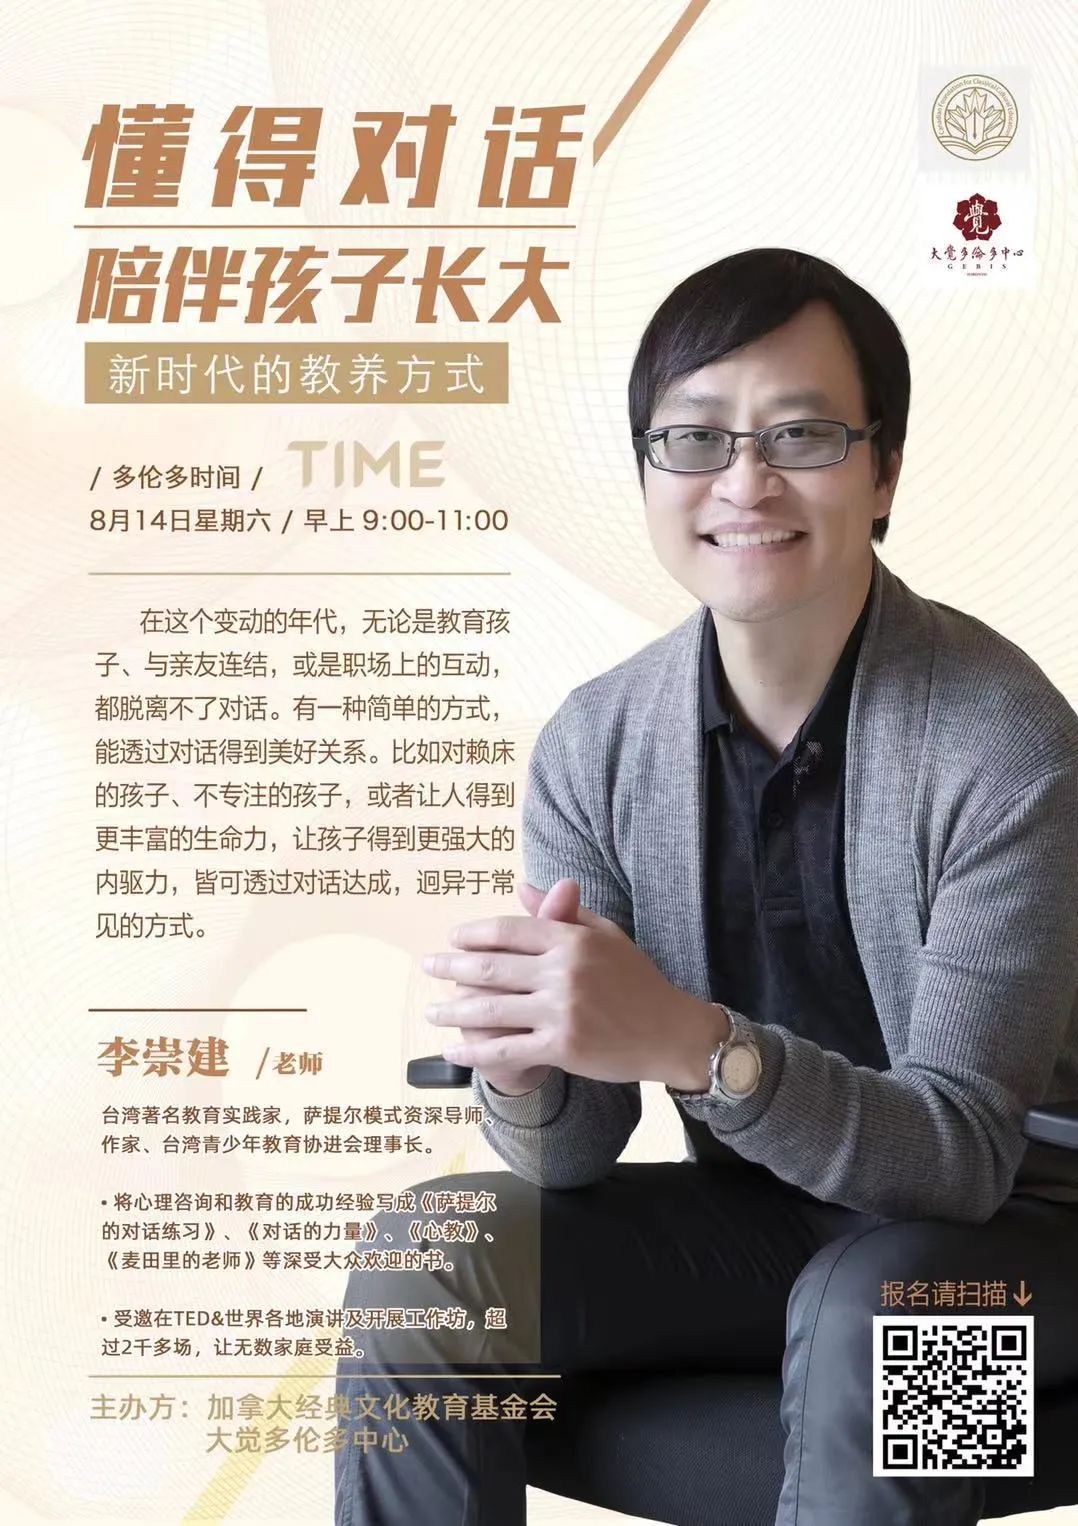 台湾著名教育实践家 李崇建老师多伦多首次公益讲座